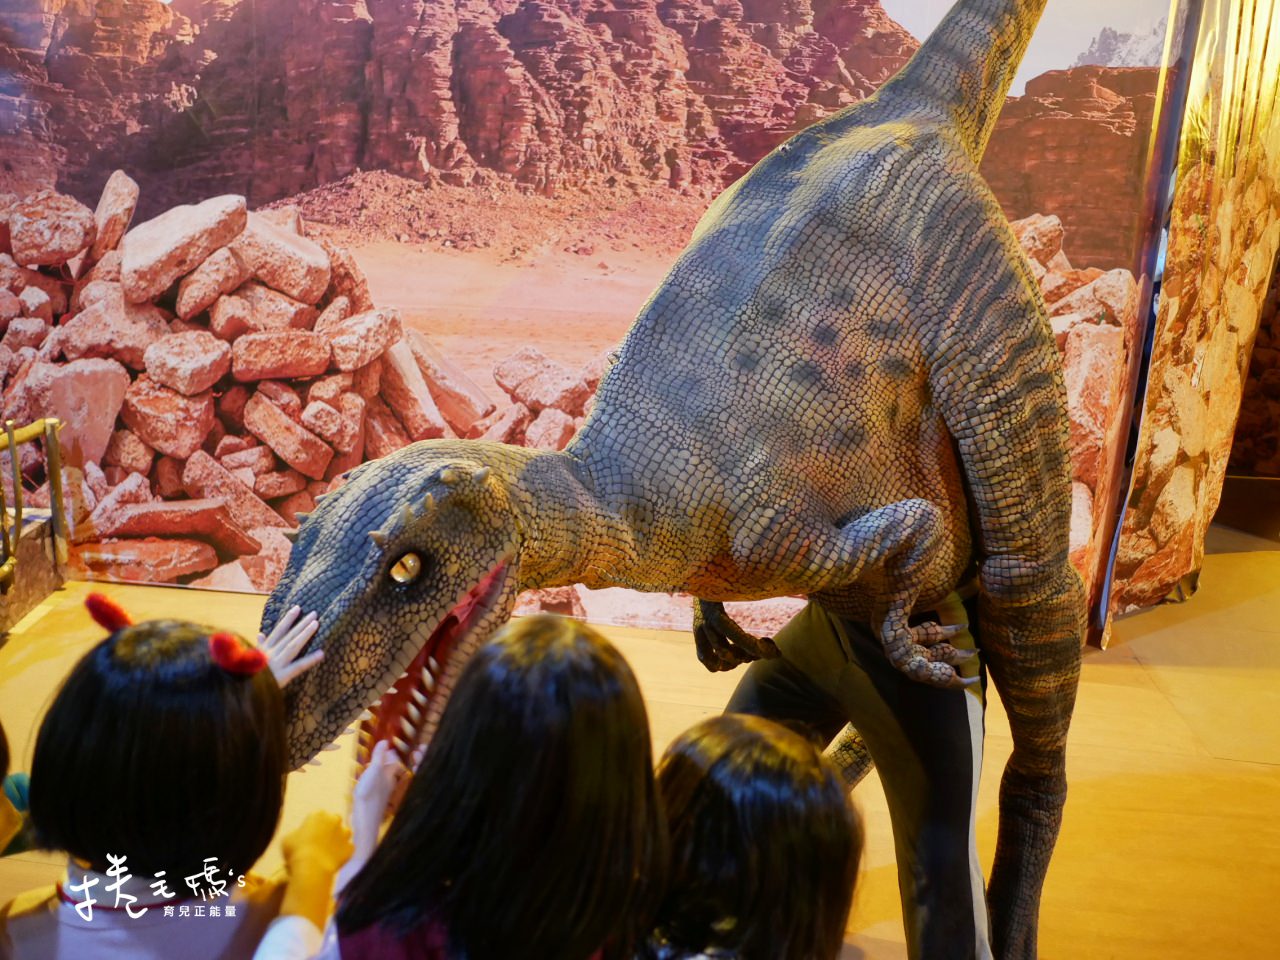 恐龍展 侏儸紀 恐龍 展覽 春節出遊 親子行程 雨天備案P1110802